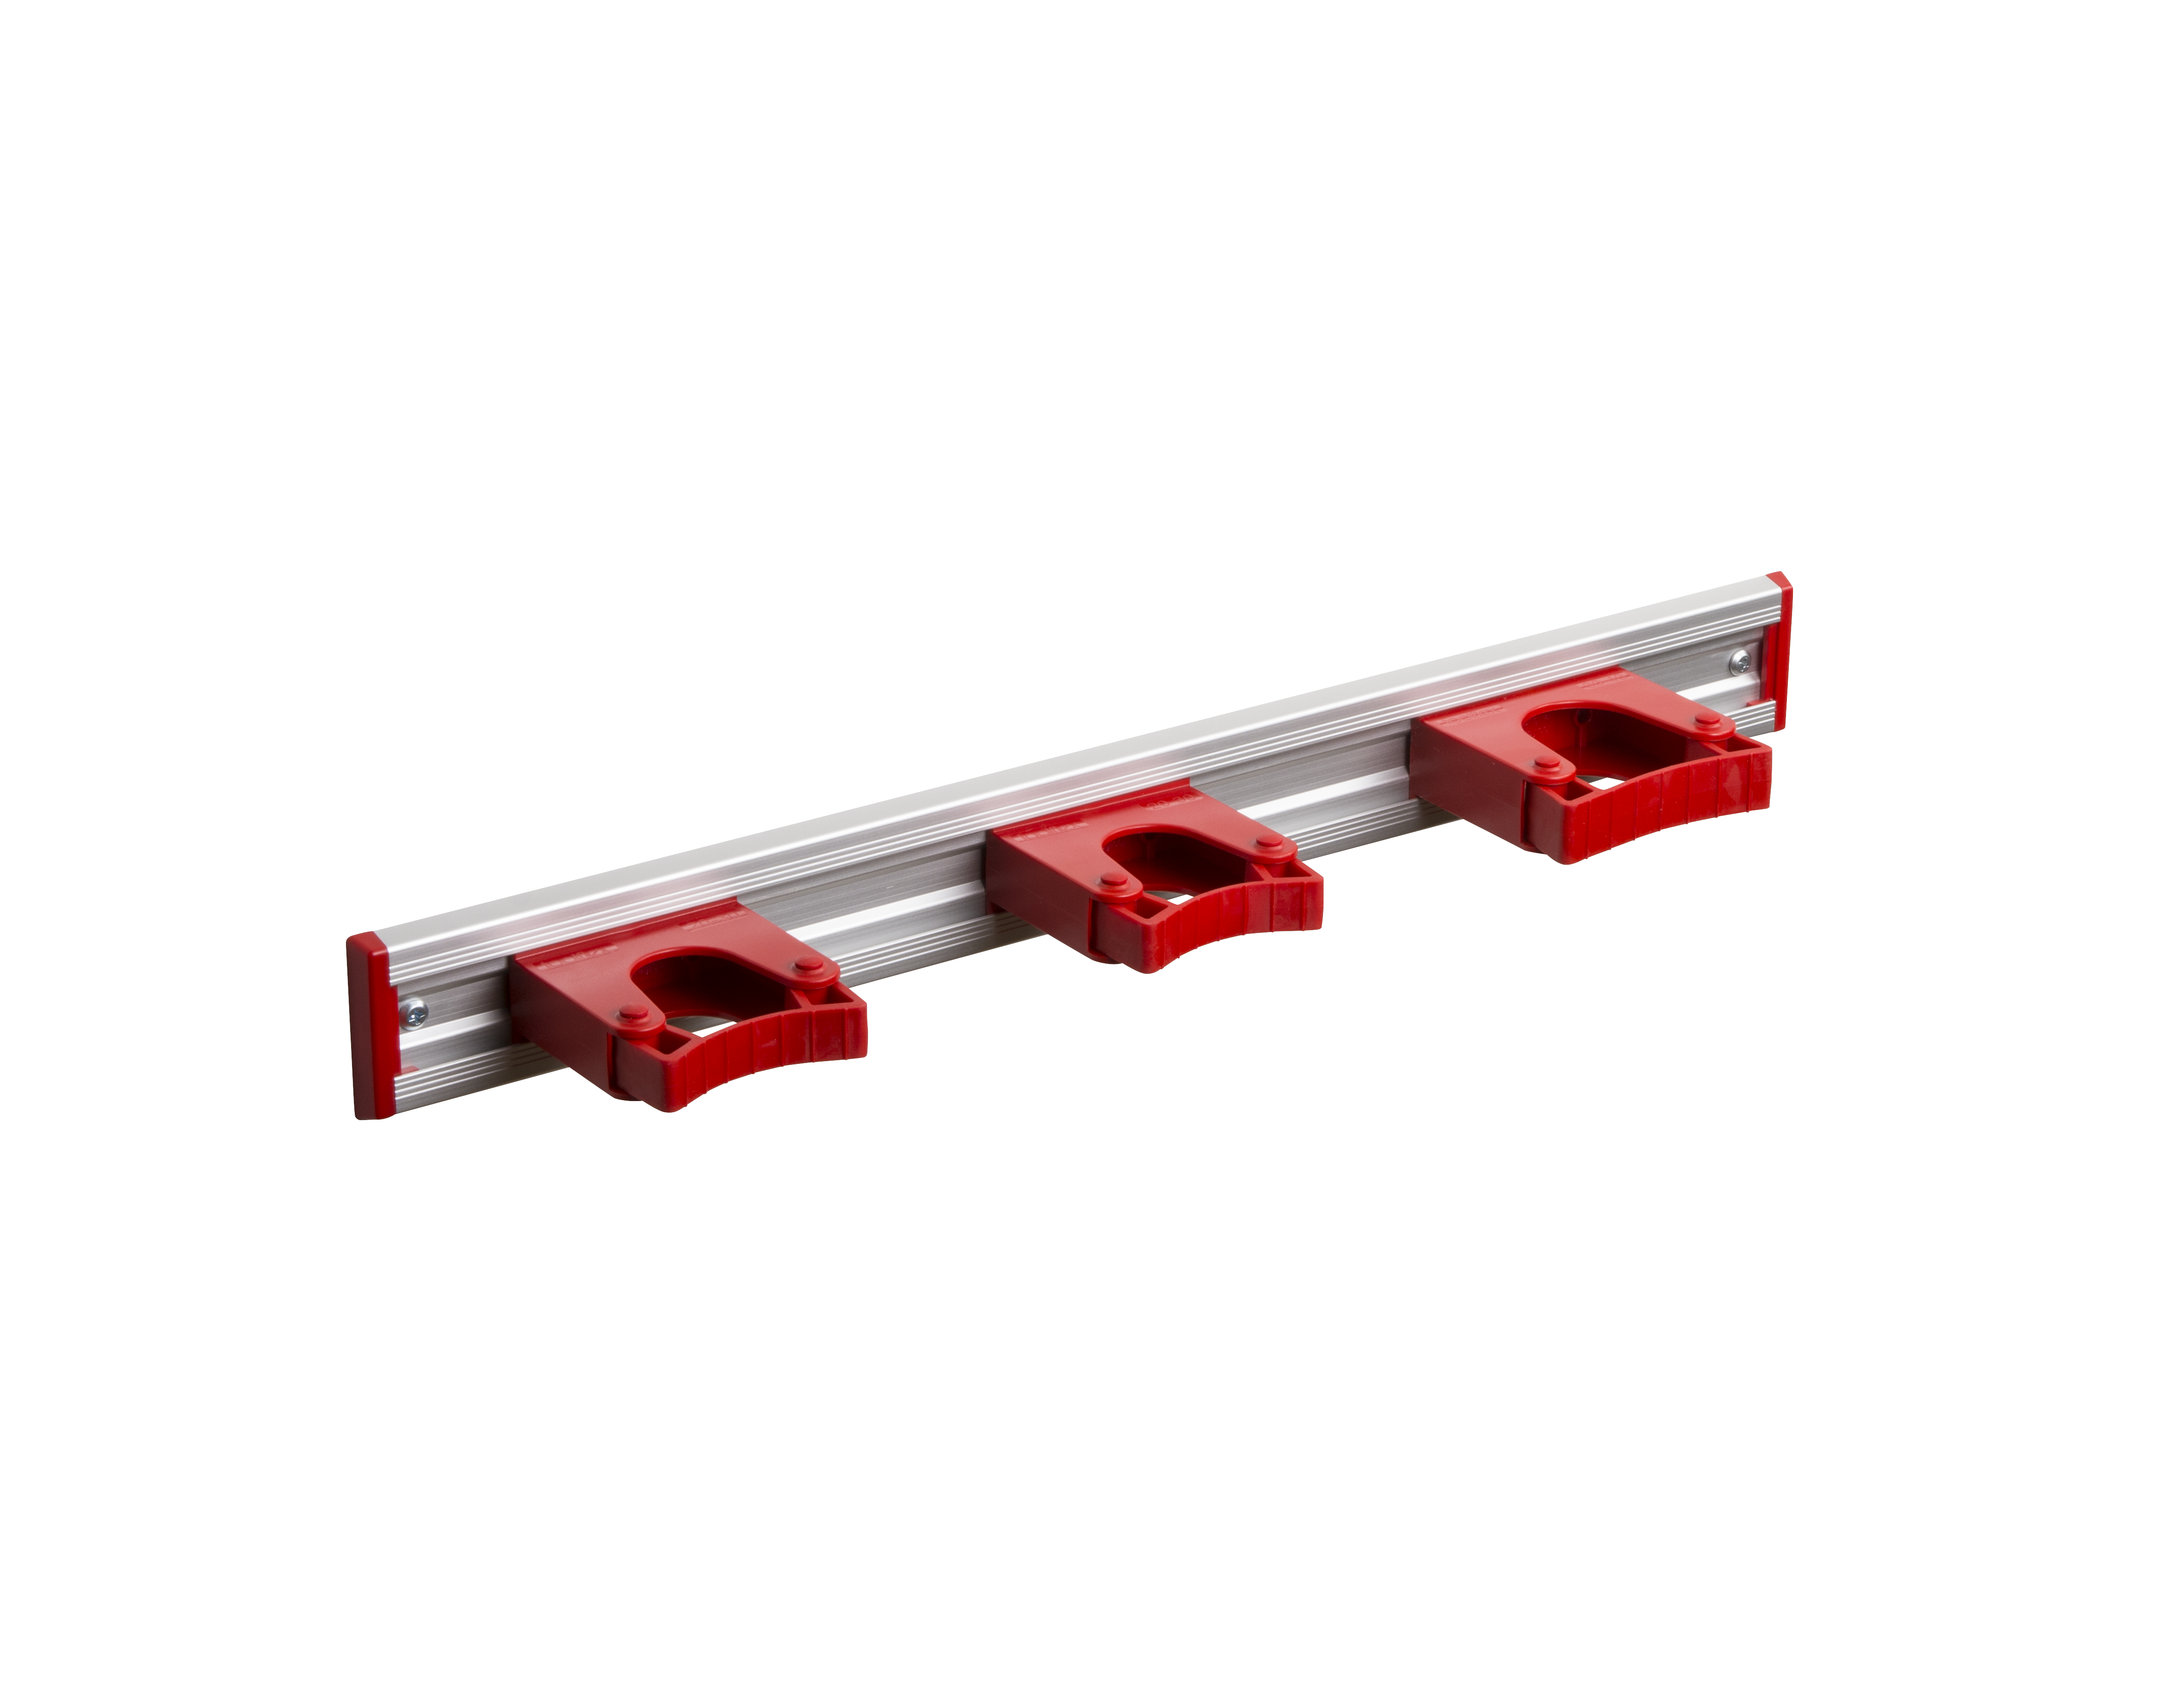 Toolflex Alu-Schiene 50 cm mit roten Endstücken, bestückt mit 3 roten Haltern (2 x 20-30 mm, 1 x 30-40 mm)